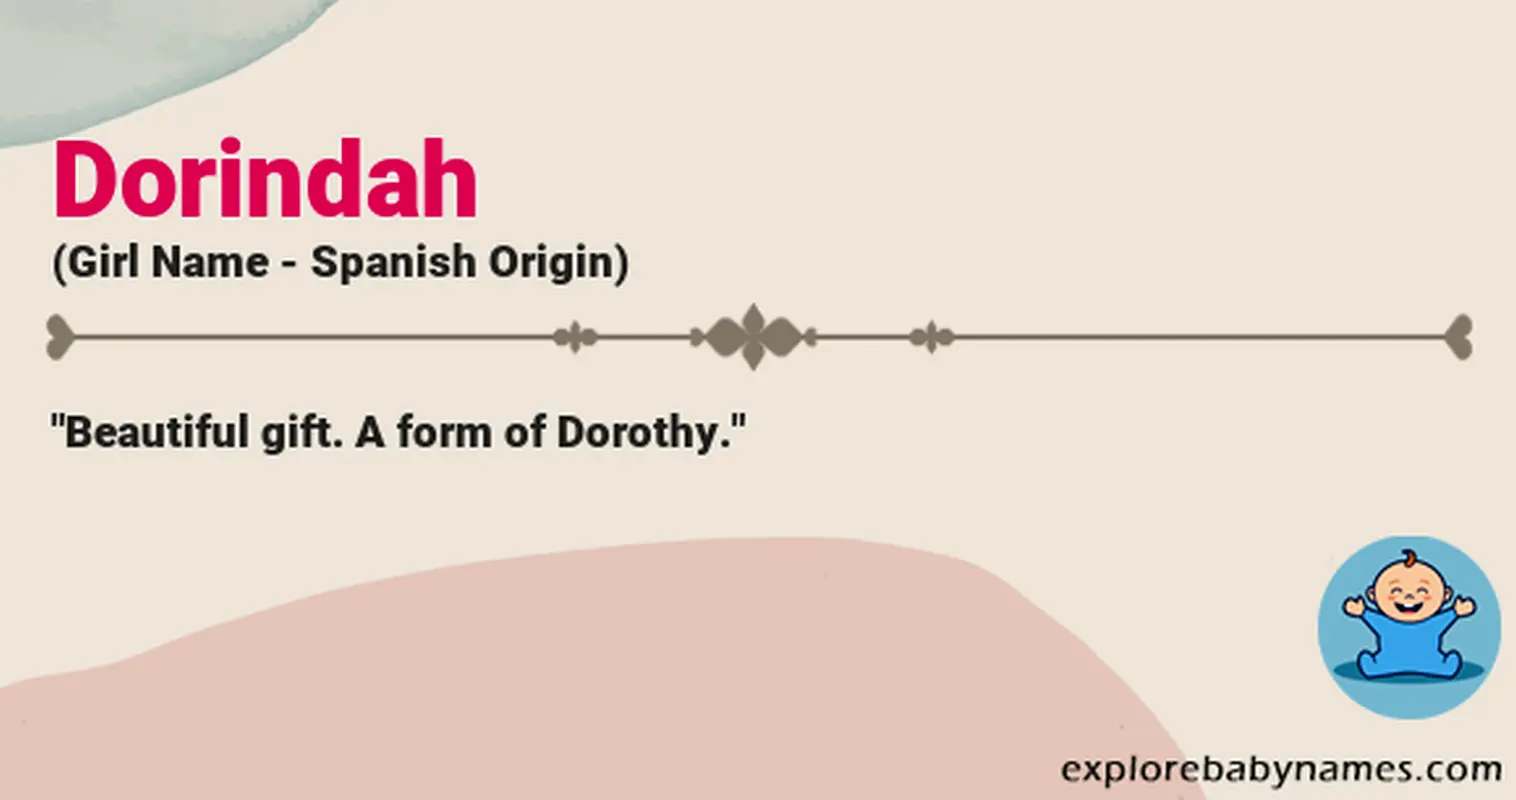 Meaning of Dorindah